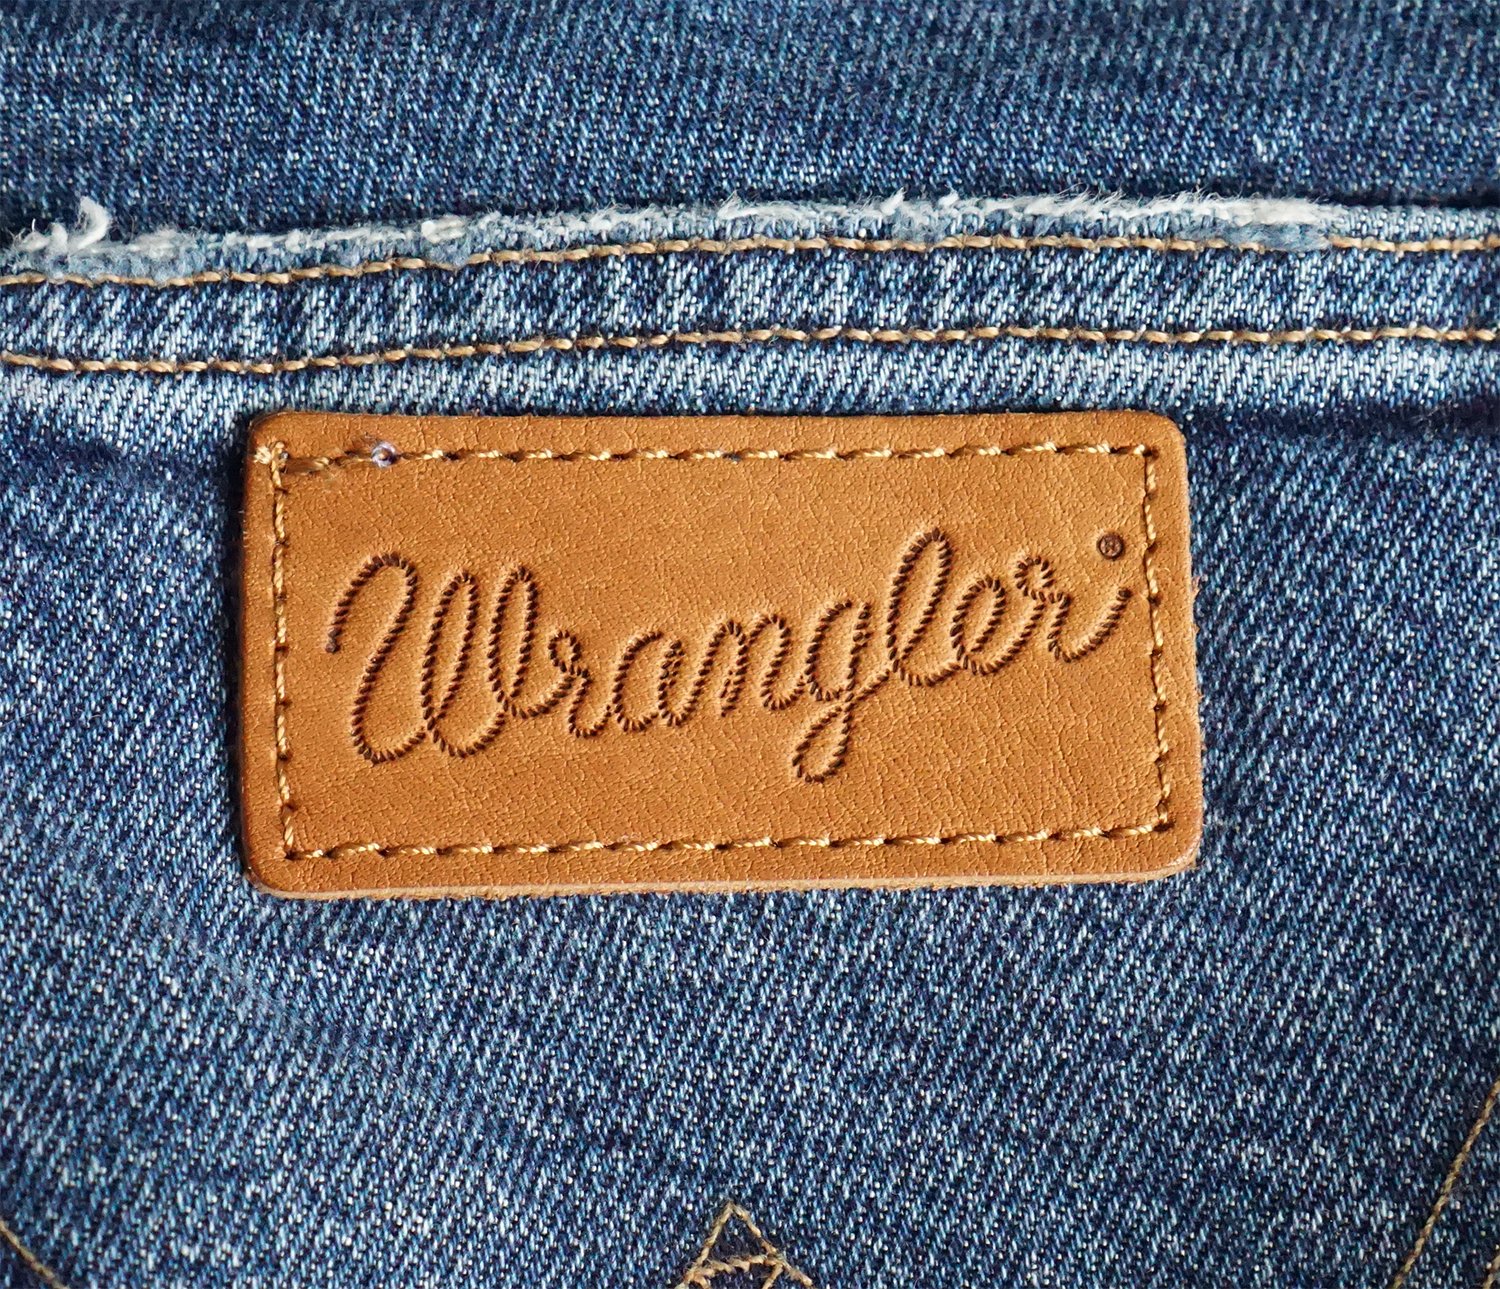 Лейбл на джинсах. Джинсы Вранглер Wrangler. Джинсы Lee Wrangler. Джинсы Монтана Левис Вранглер. Wrangler Jeans logo.